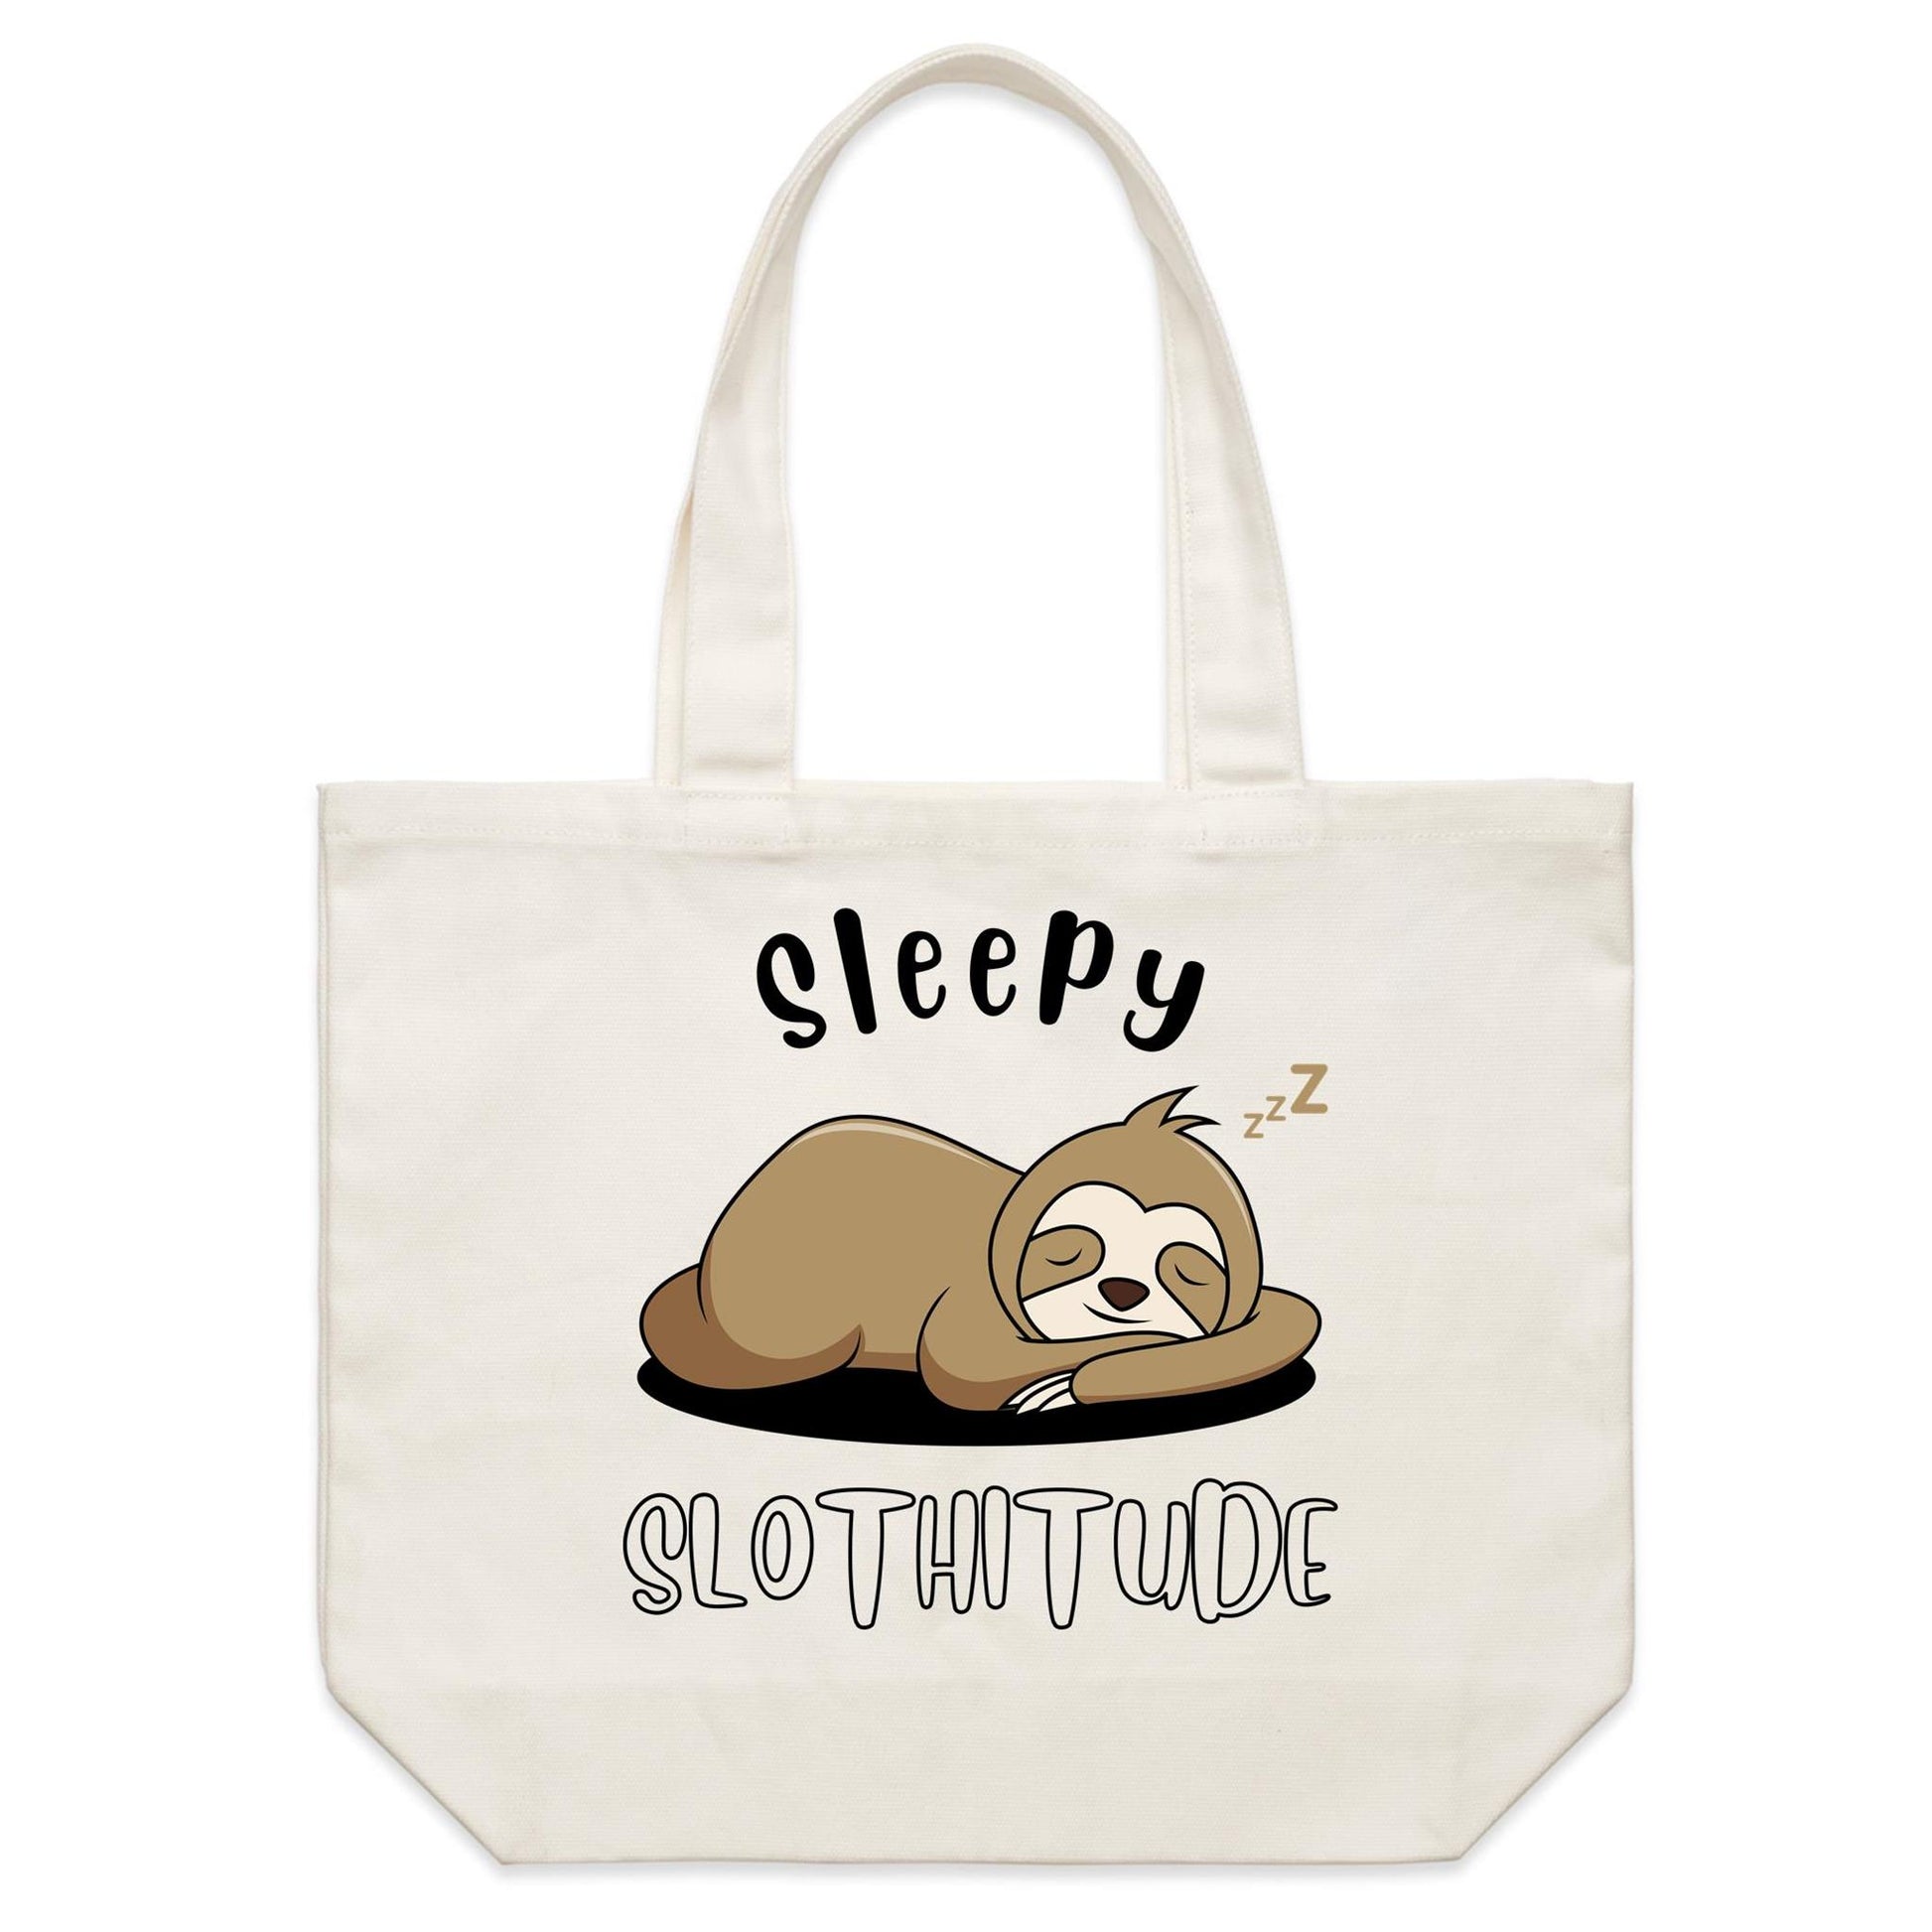 Sleepy Slothitude - Shoulder Canvas Tote Bag Default Title Shoulder Tote Bag